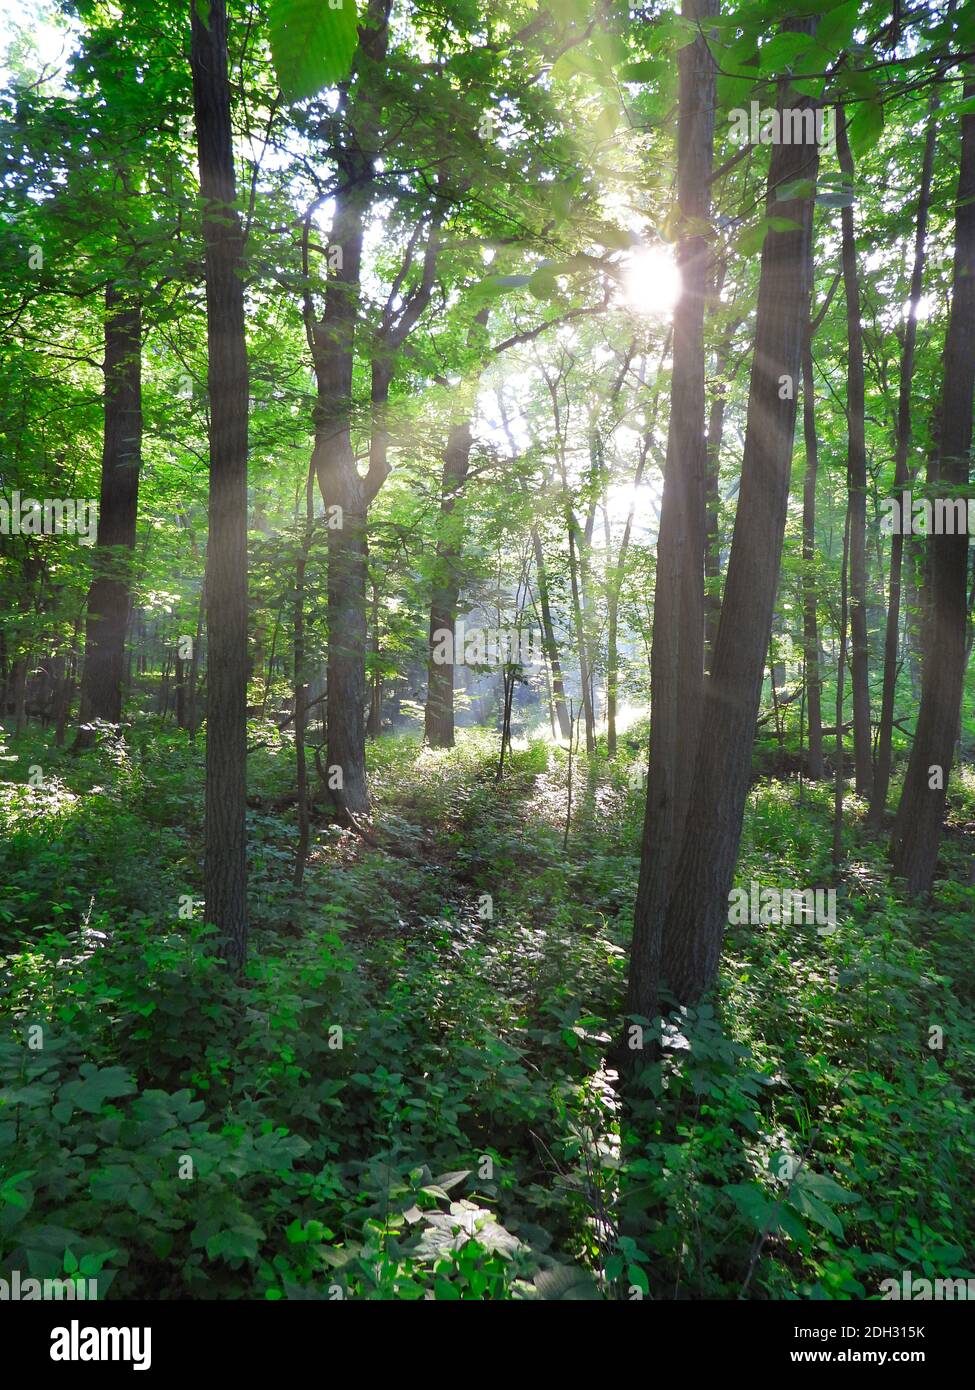 Bosque boscoso paisaje Vistas amanecer mañana con rayos de sol brillante A través de los árboles que muestran el crecimiento verde vibrante del bosque de verano calma y.. Escena tranquila Foto de stock